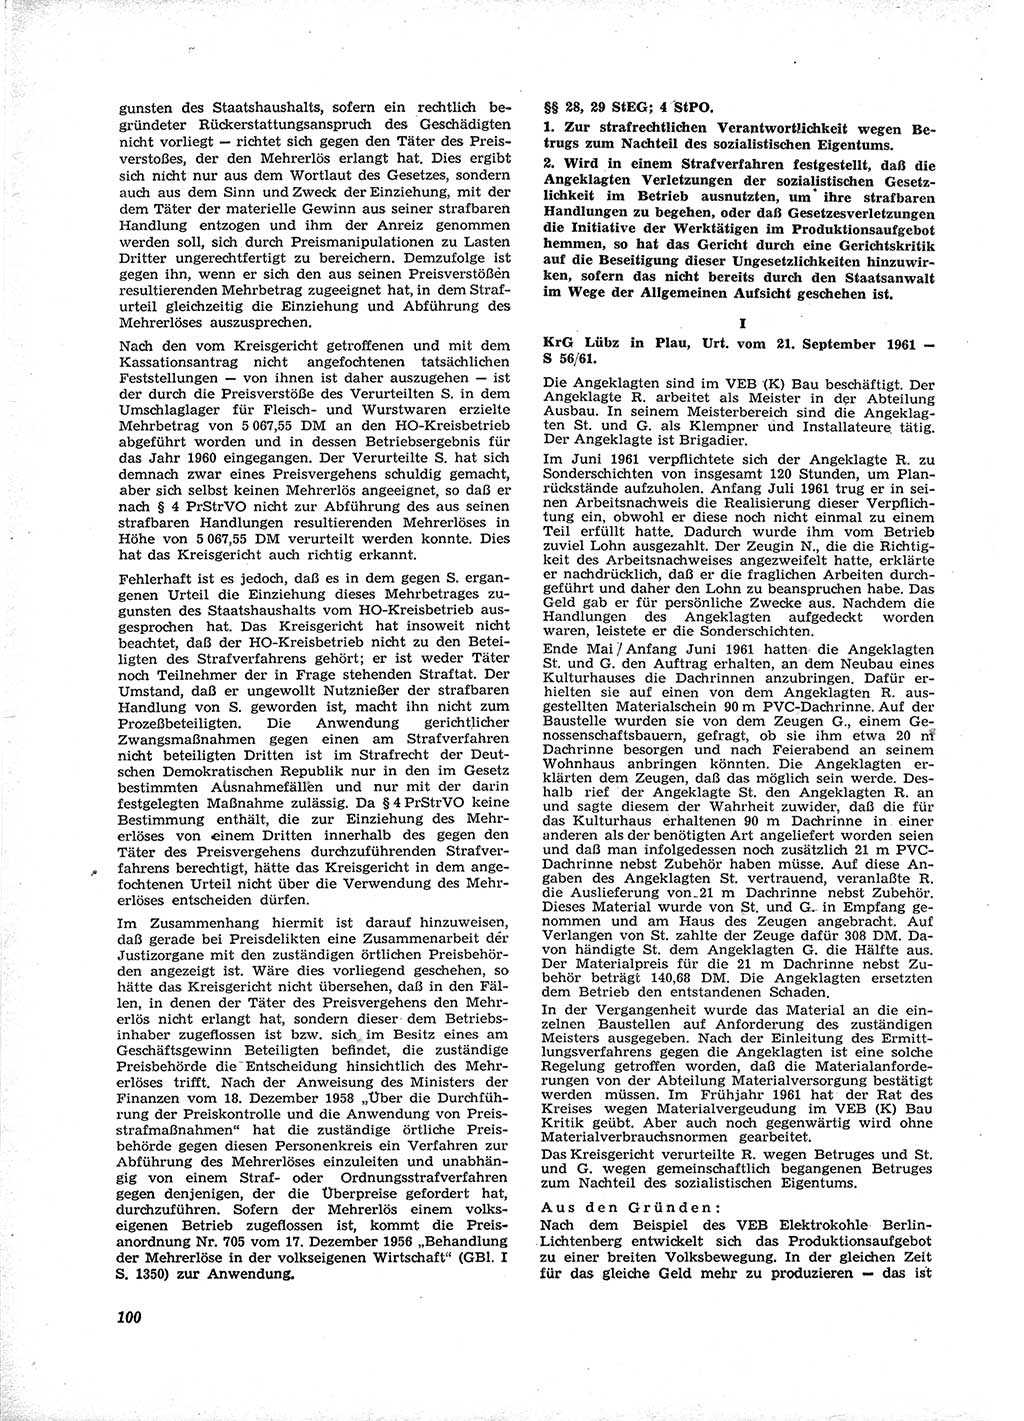 Neue Justiz (NJ), Zeitschrift für Recht und Rechtswissenschaft [Deutsche Demokratische Republik (DDR)], 16. Jahrgang 1962, Seite 100 (NJ DDR 1962, S. 100)